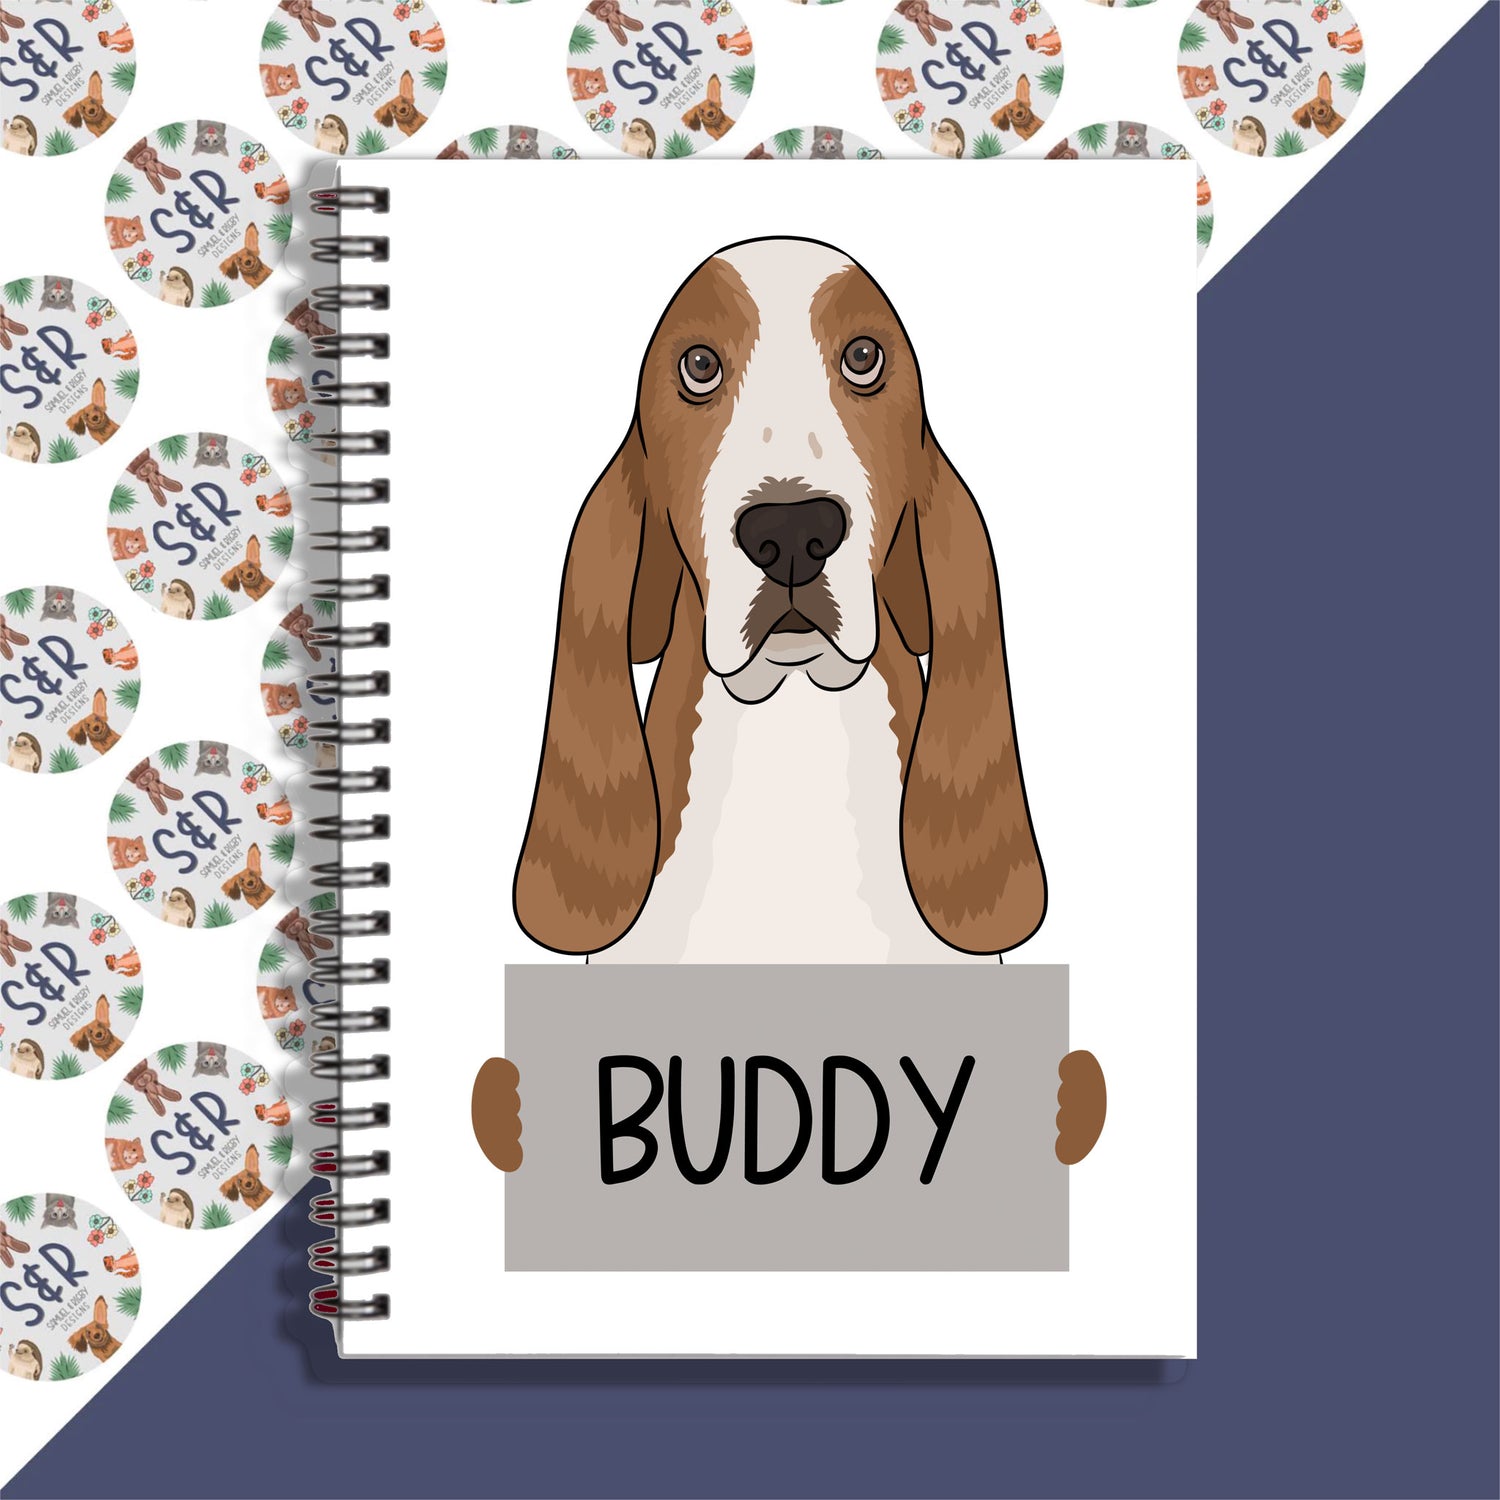 basset-hound-notebook